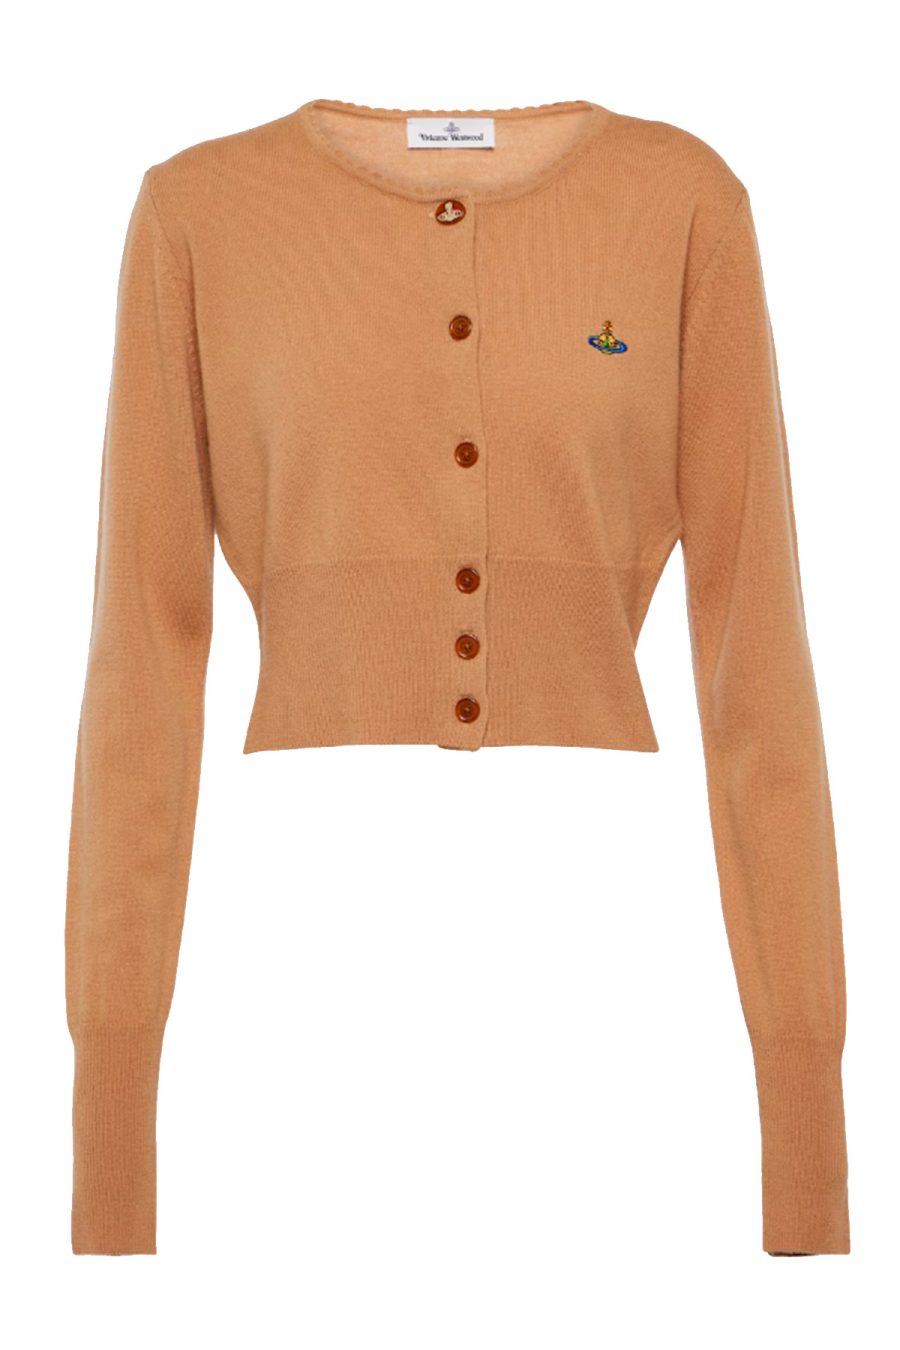 Vivienne Westwood Sweaters Brown